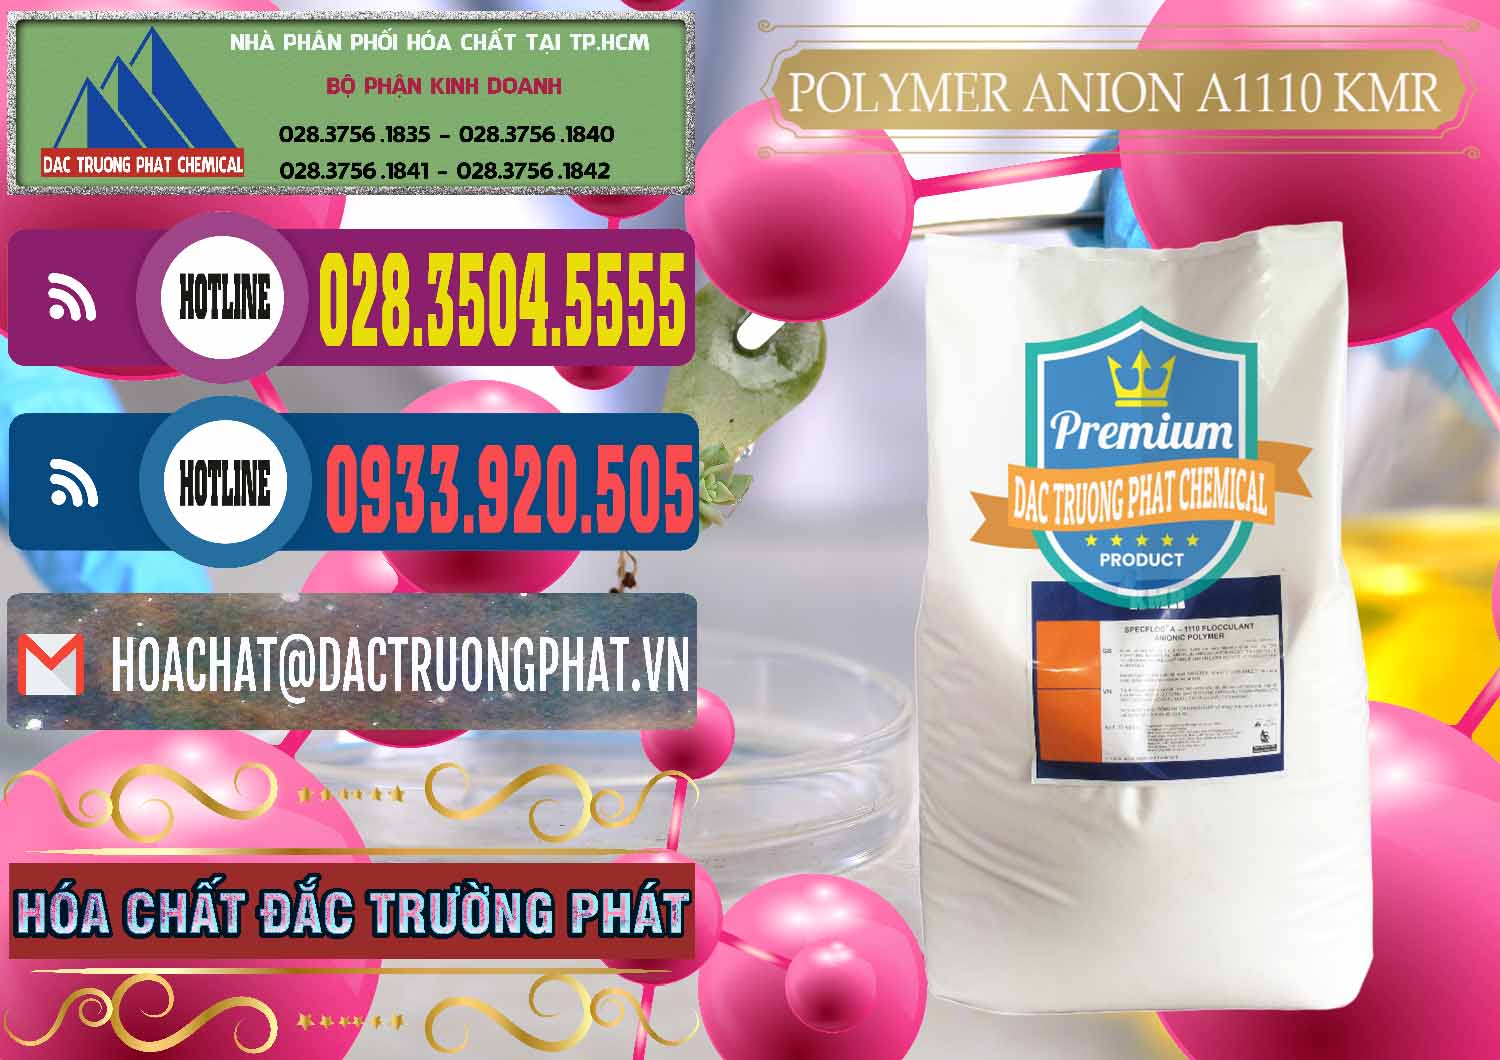 Công ty nhập khẩu ( bán ) Polymer Anion A1110 - KMR Anh Quốc England - 0118 - Công ty chuyên kinh doanh _ phân phối hóa chất tại TP.HCM - muabanhoachat.com.vn